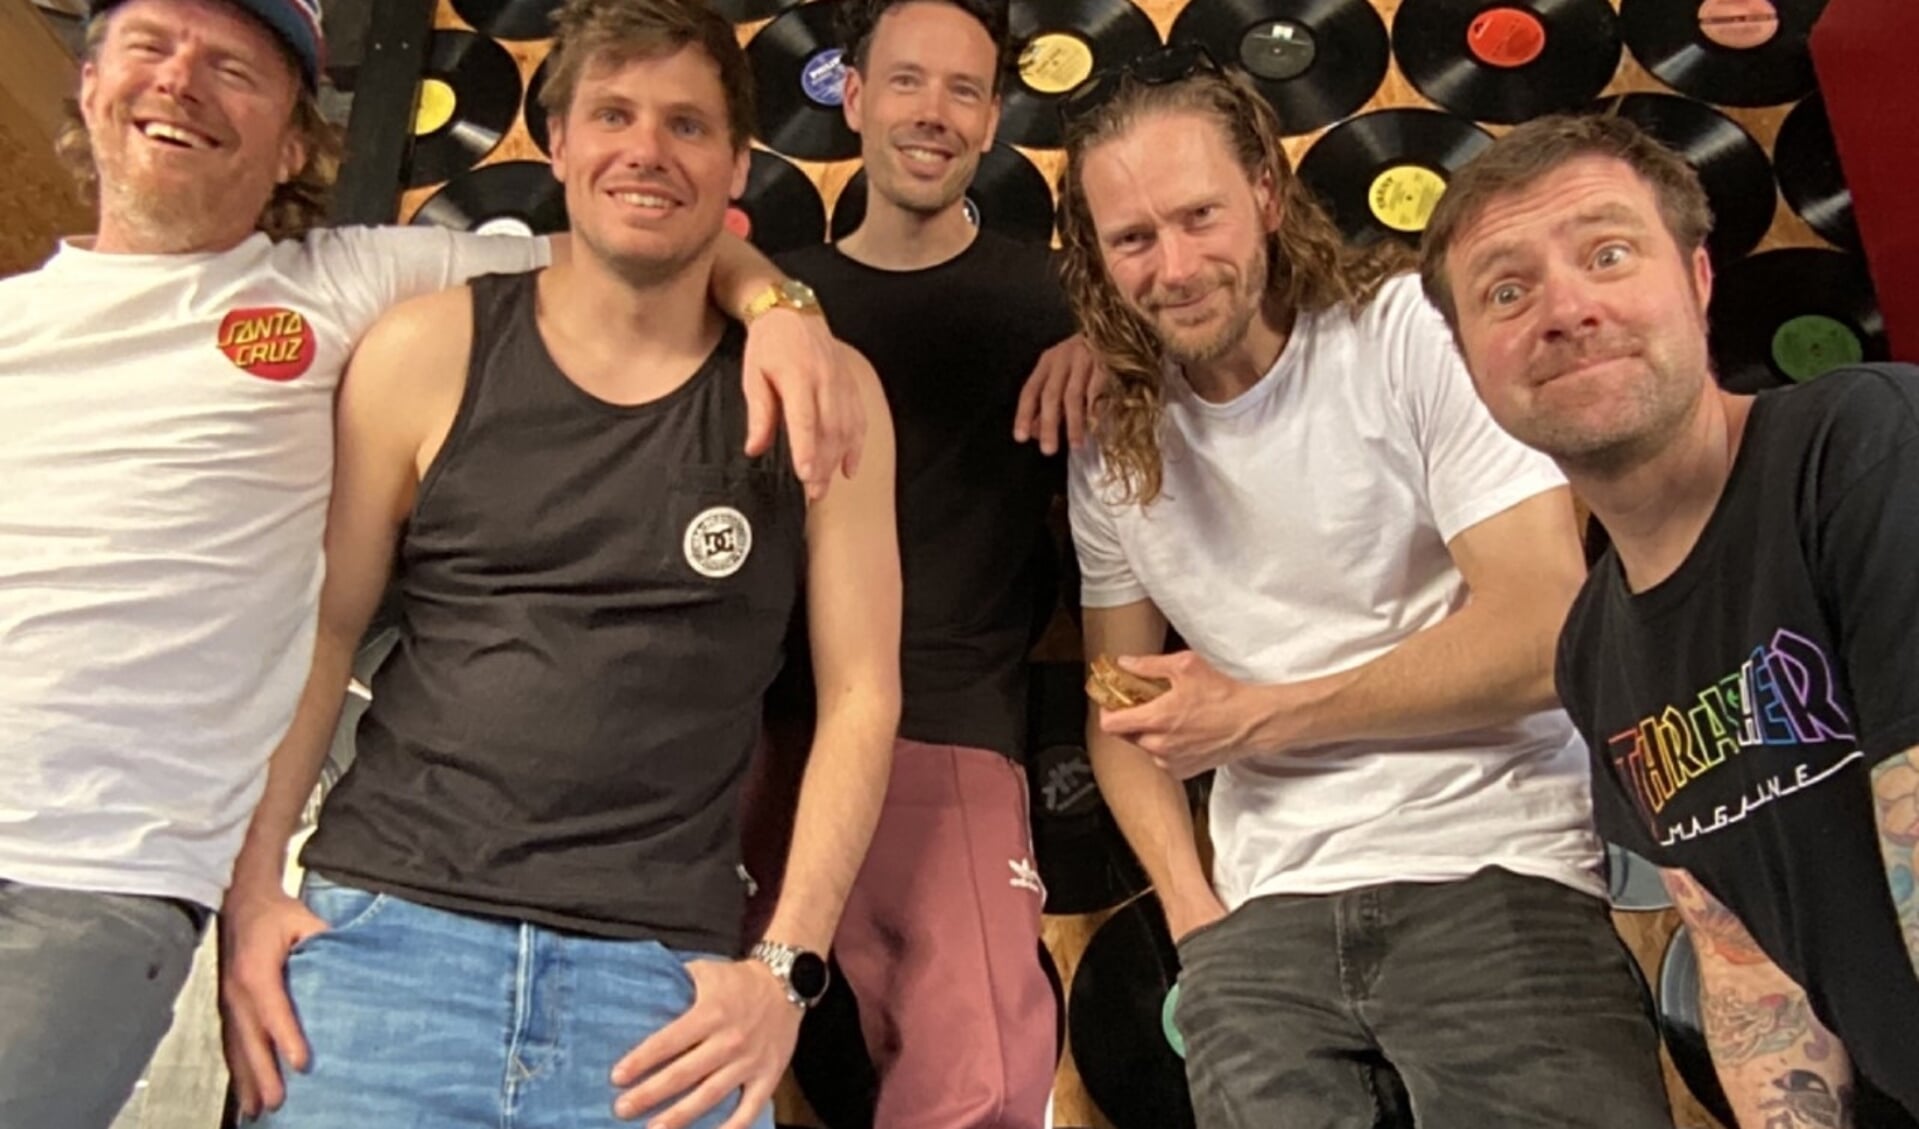 Na vijftien jaar is Wrecking Crüe terug met een nieuwe set en bereidt de band zich dit voorjaar voor op een eenmalig spetterend optreden vol punkrocknostalgie in Brouwerscafé Bossche Brouwers aan de Vaart.